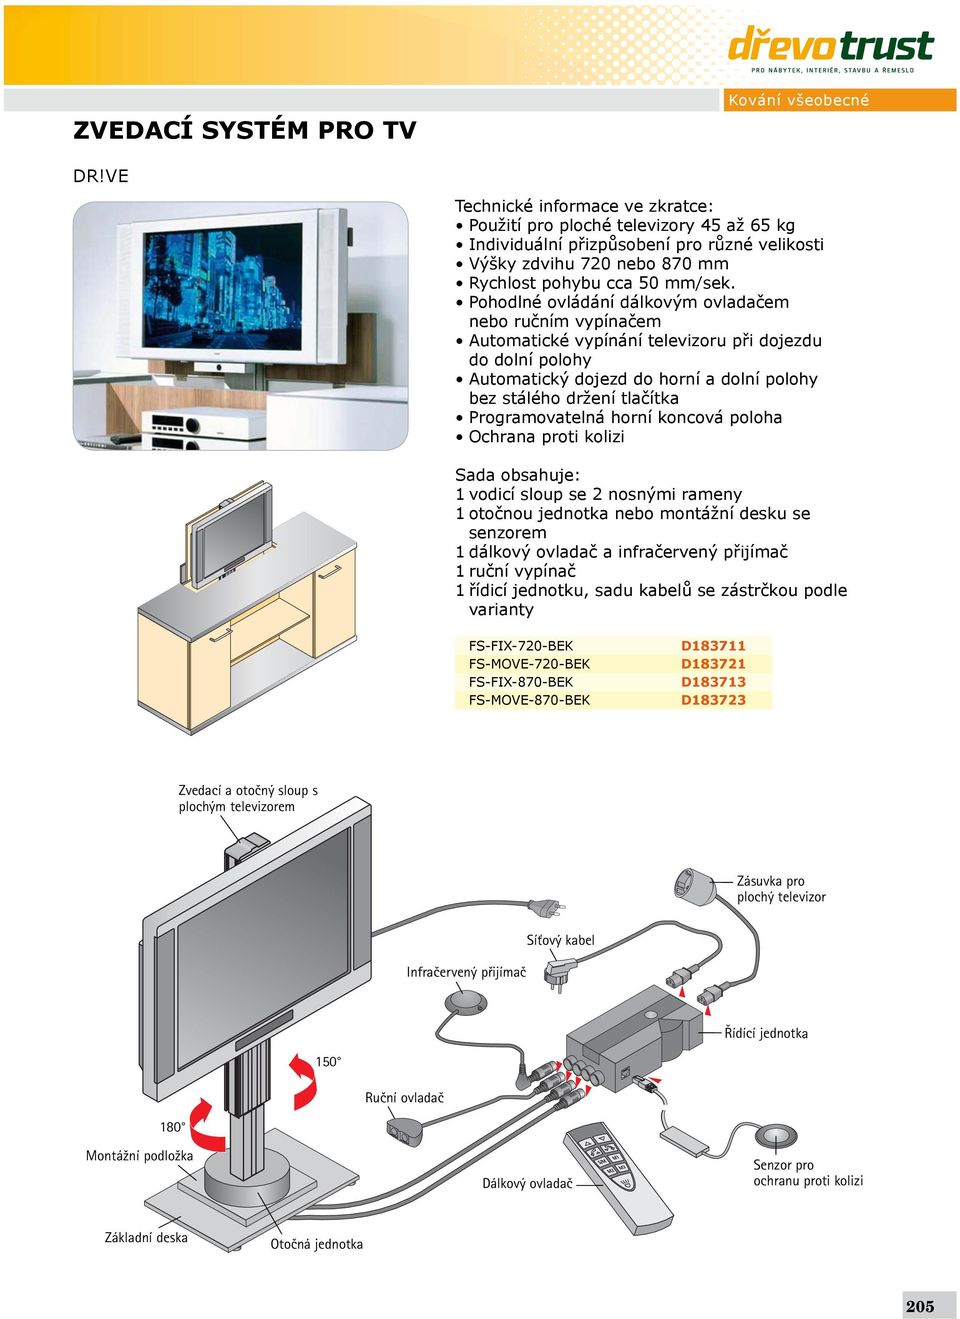 Pohodlné ovládání dálkovým ovladačem nebo ručním vypínačem Automatické vypínání televizoru při dojezdu do dolní polohy Automatický dojezd do horní a dolní polohy bez stálého držení tlačítka